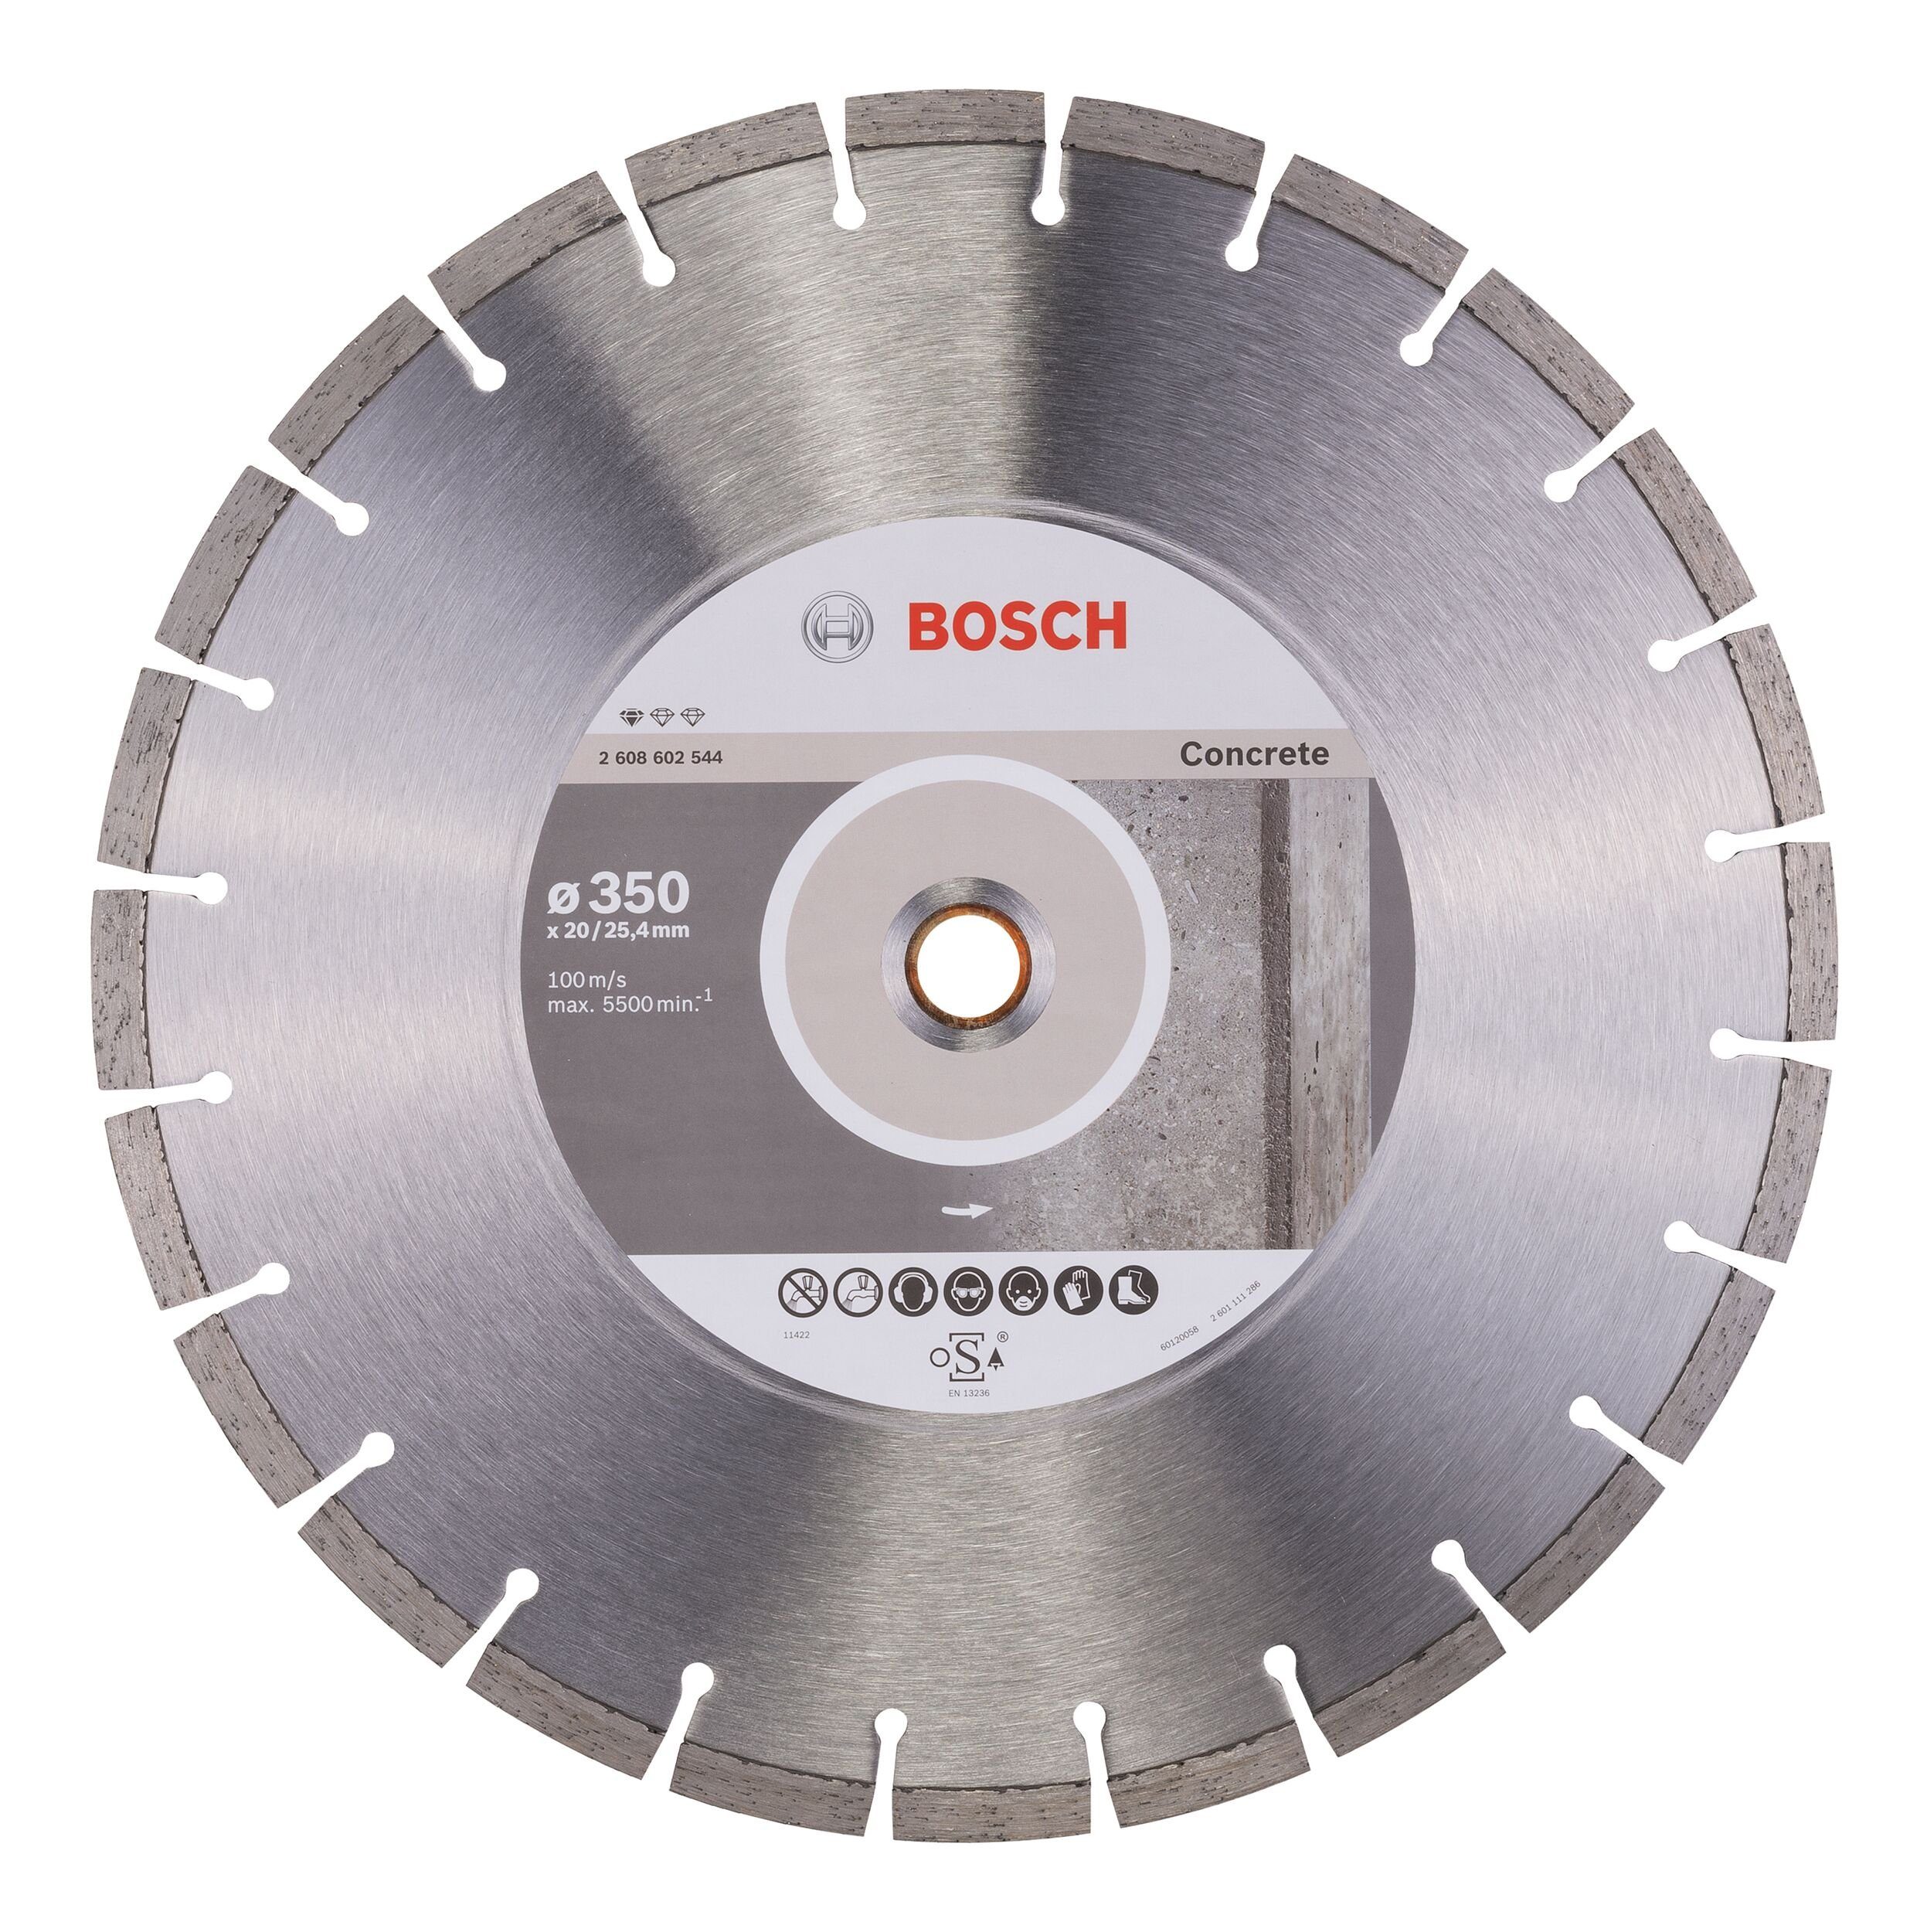 BOSCH Trennscheibe, Ø 350 mm, Standard for Concrete Diamanttrennscheibe - 350 x 20/25,4 x 2,8 x